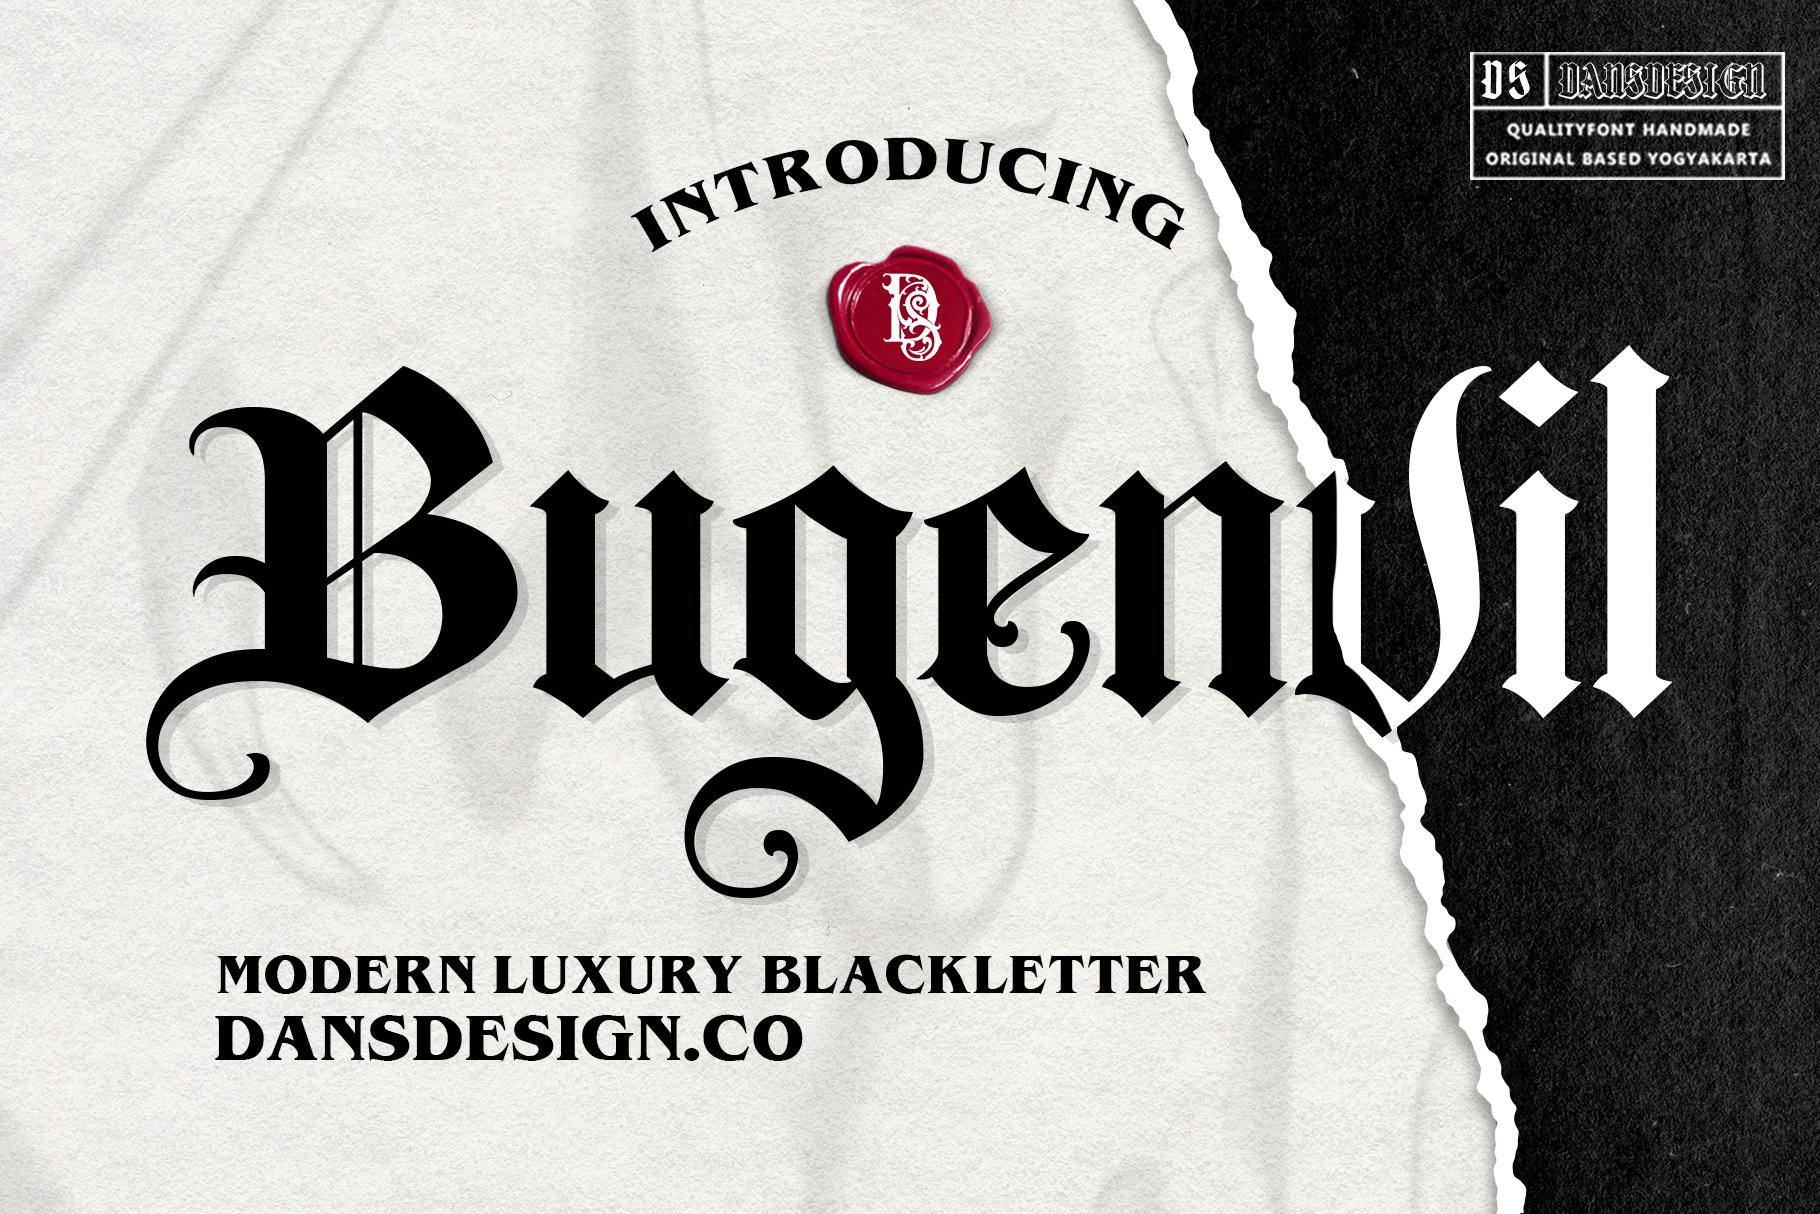 Bugenvil Modern Blackletter cover image.